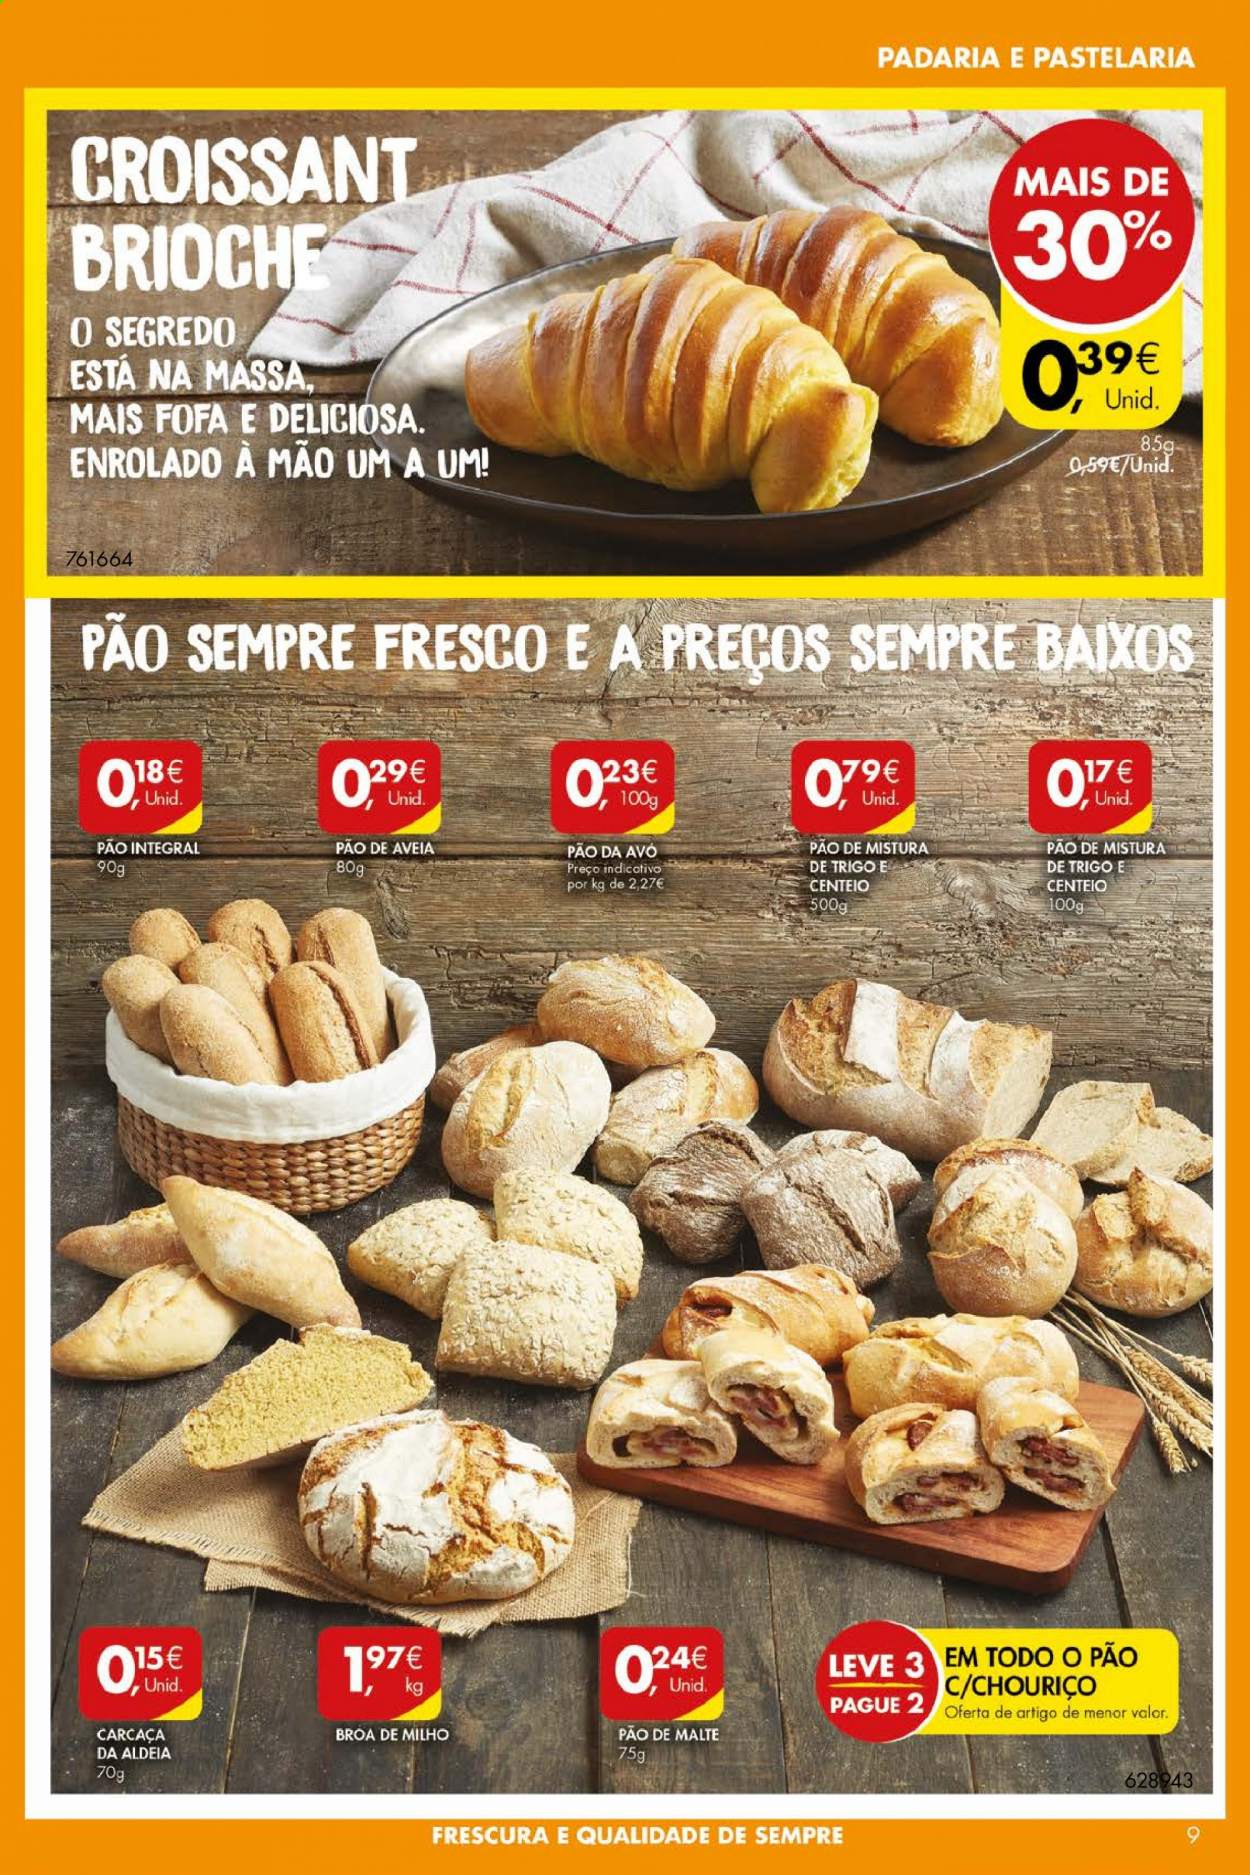 thumbnail - Folheto Pingo Doce - 13.7.2021 - 19.7.2021 - Produtos em promoção - pão, broa de milho, brioche, croissant, chouriço. Página 9.